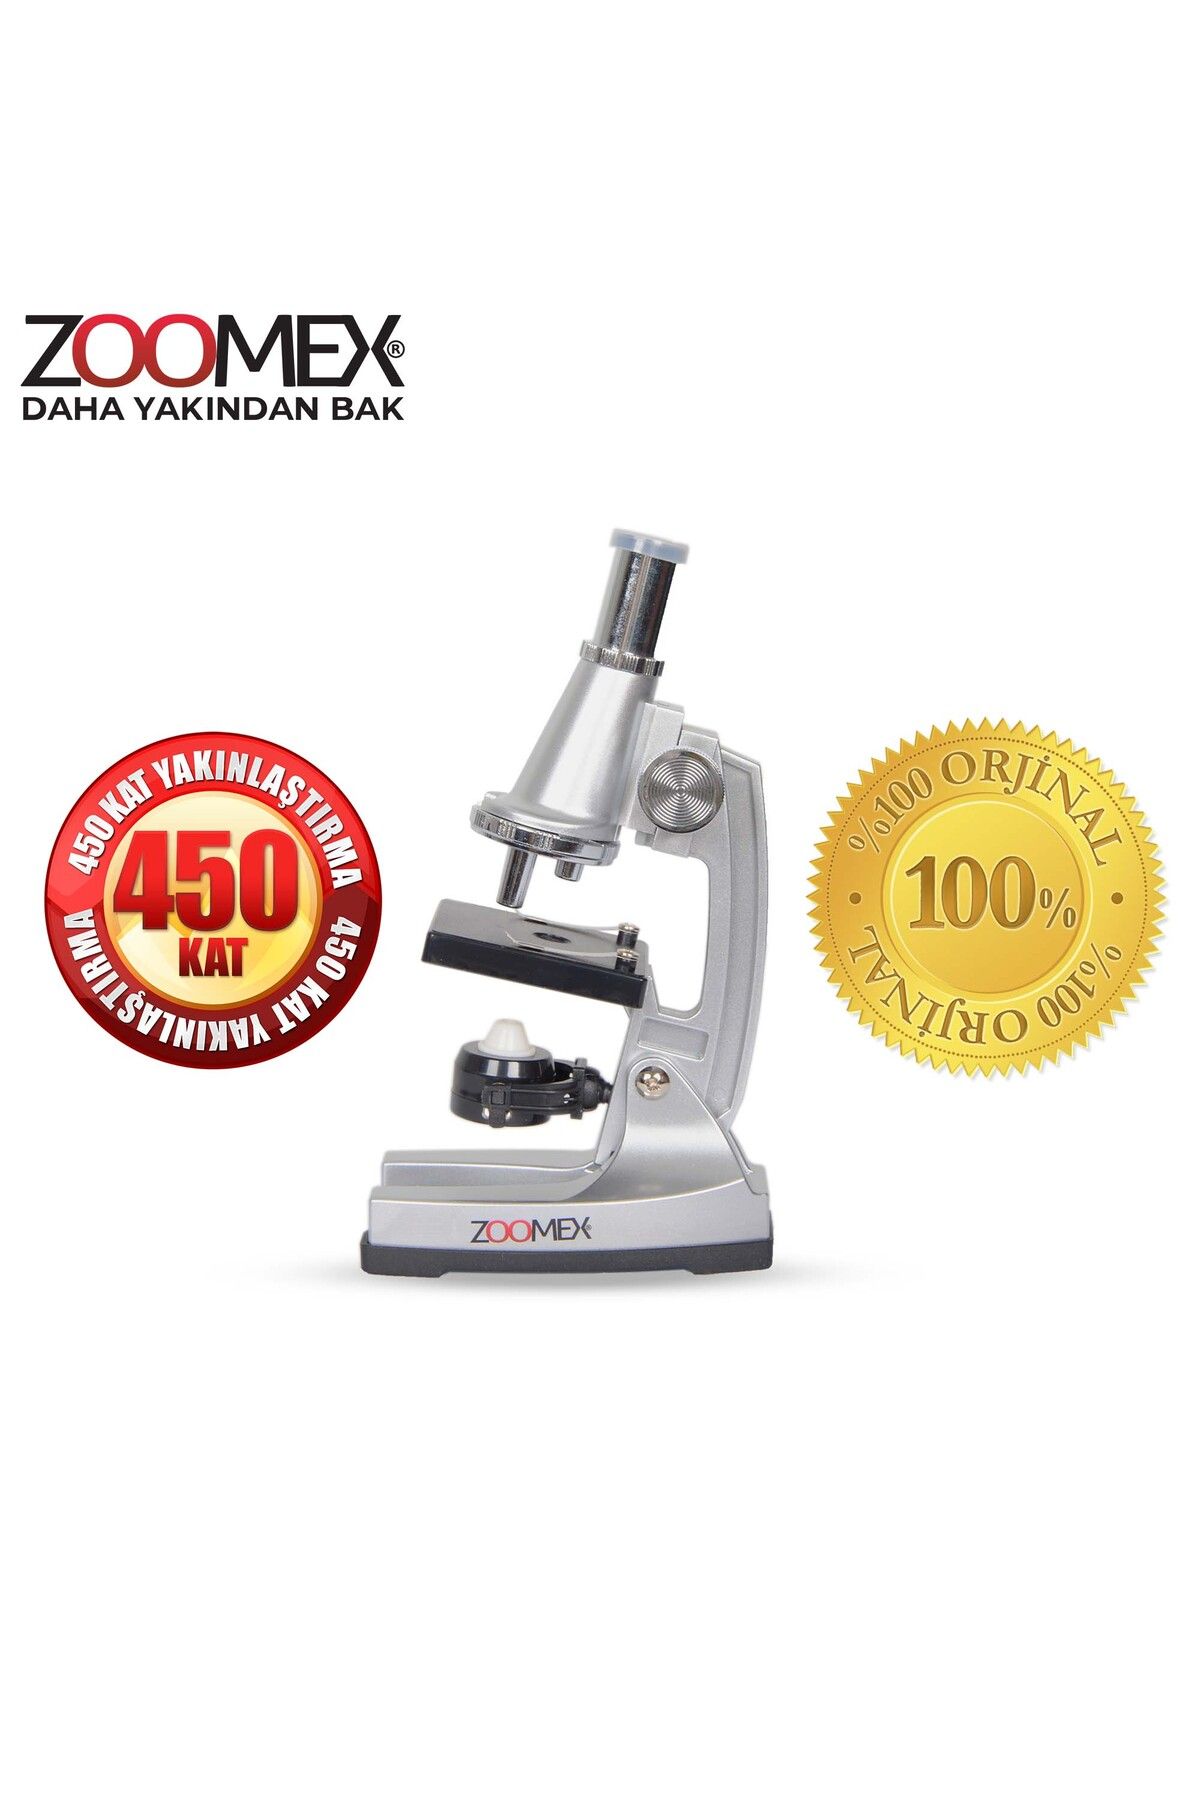 Zoomex Mp-a450 Mikroskop - Eğitici Ve Öğretici - Geleceğin Bilim Insanı Olun